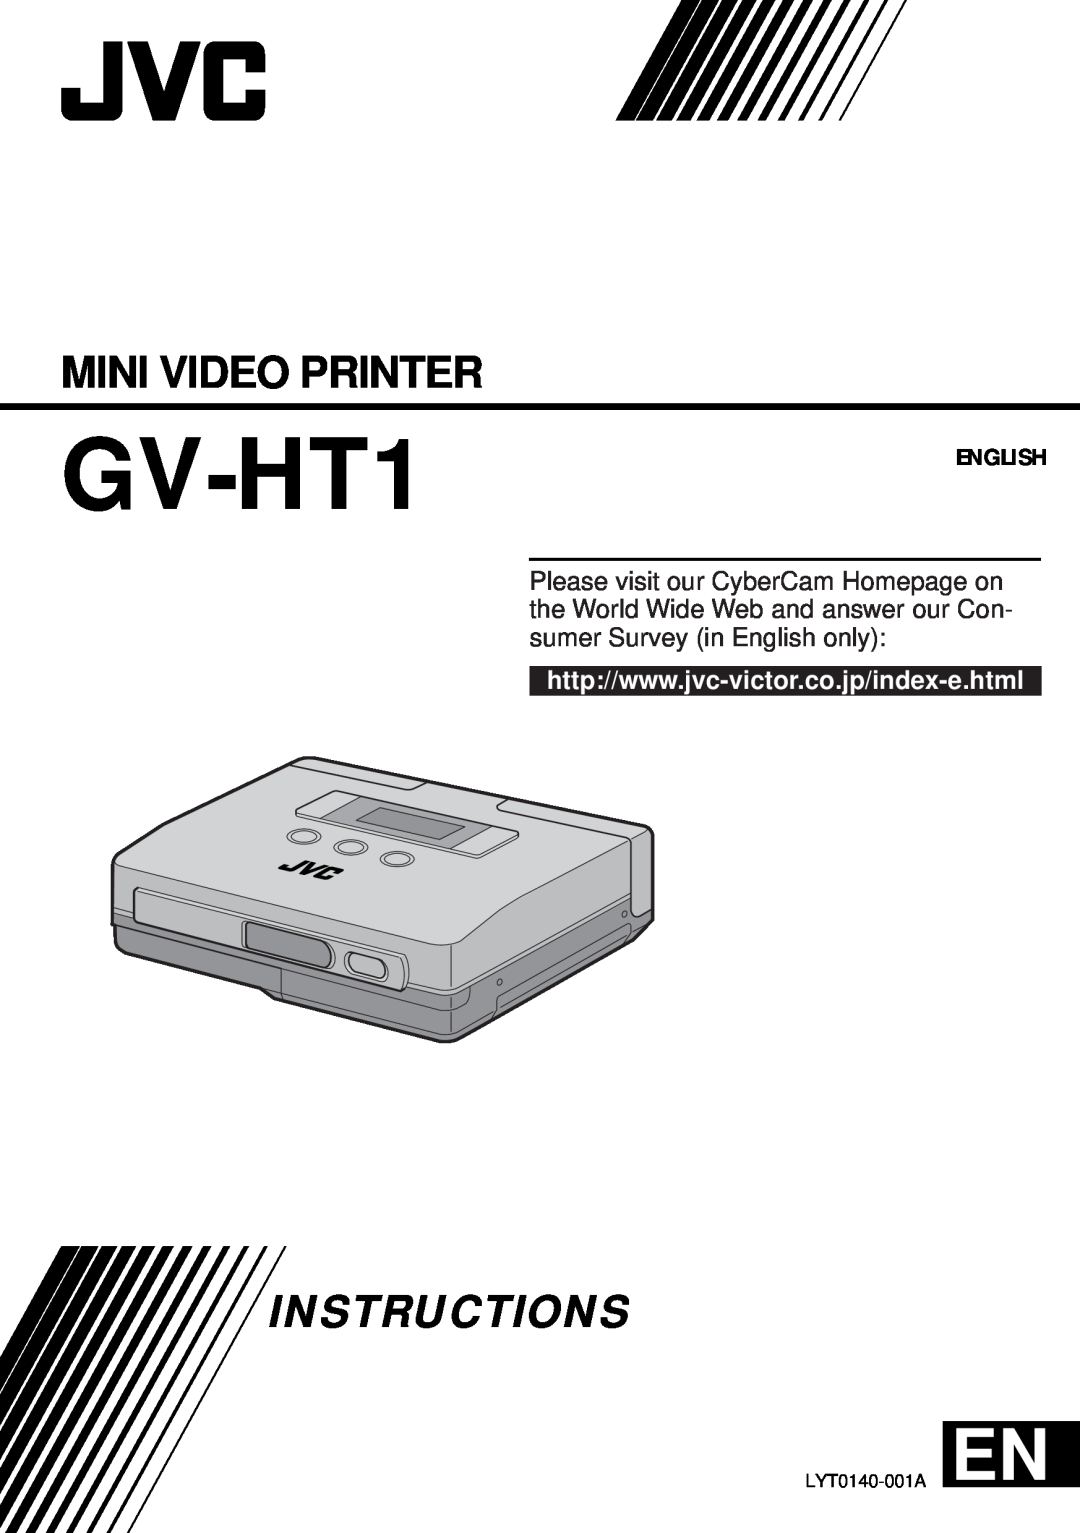 JVC GV-HT1 manual Mini Video Printer, Instructions, English 